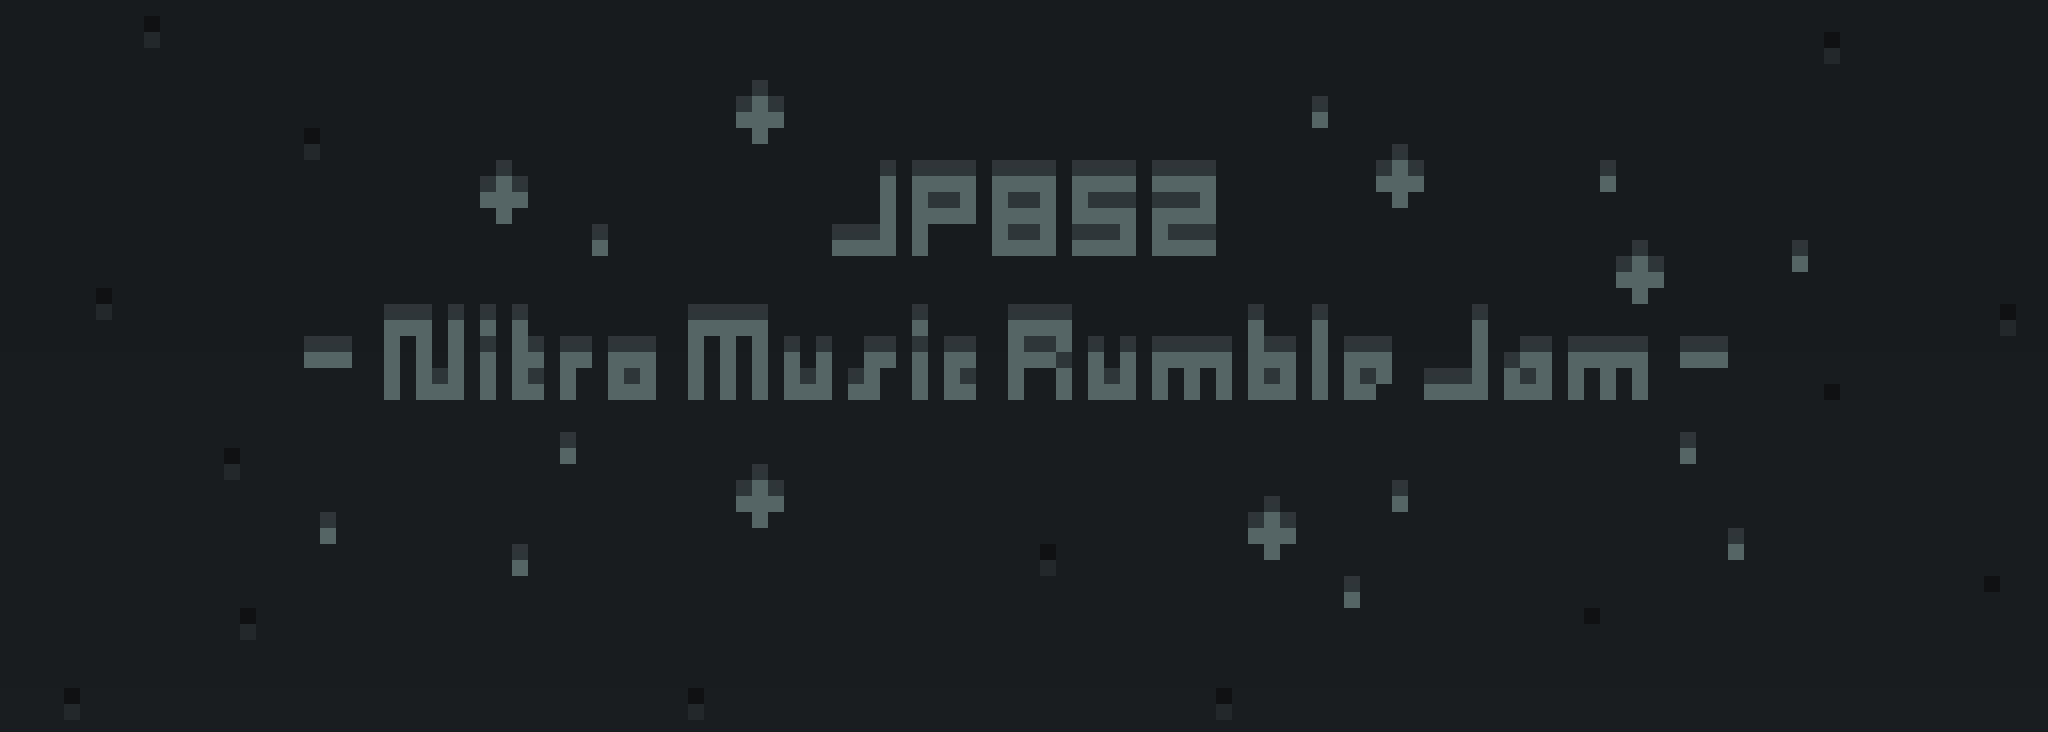 Nitro-Music Rumble Jam #8